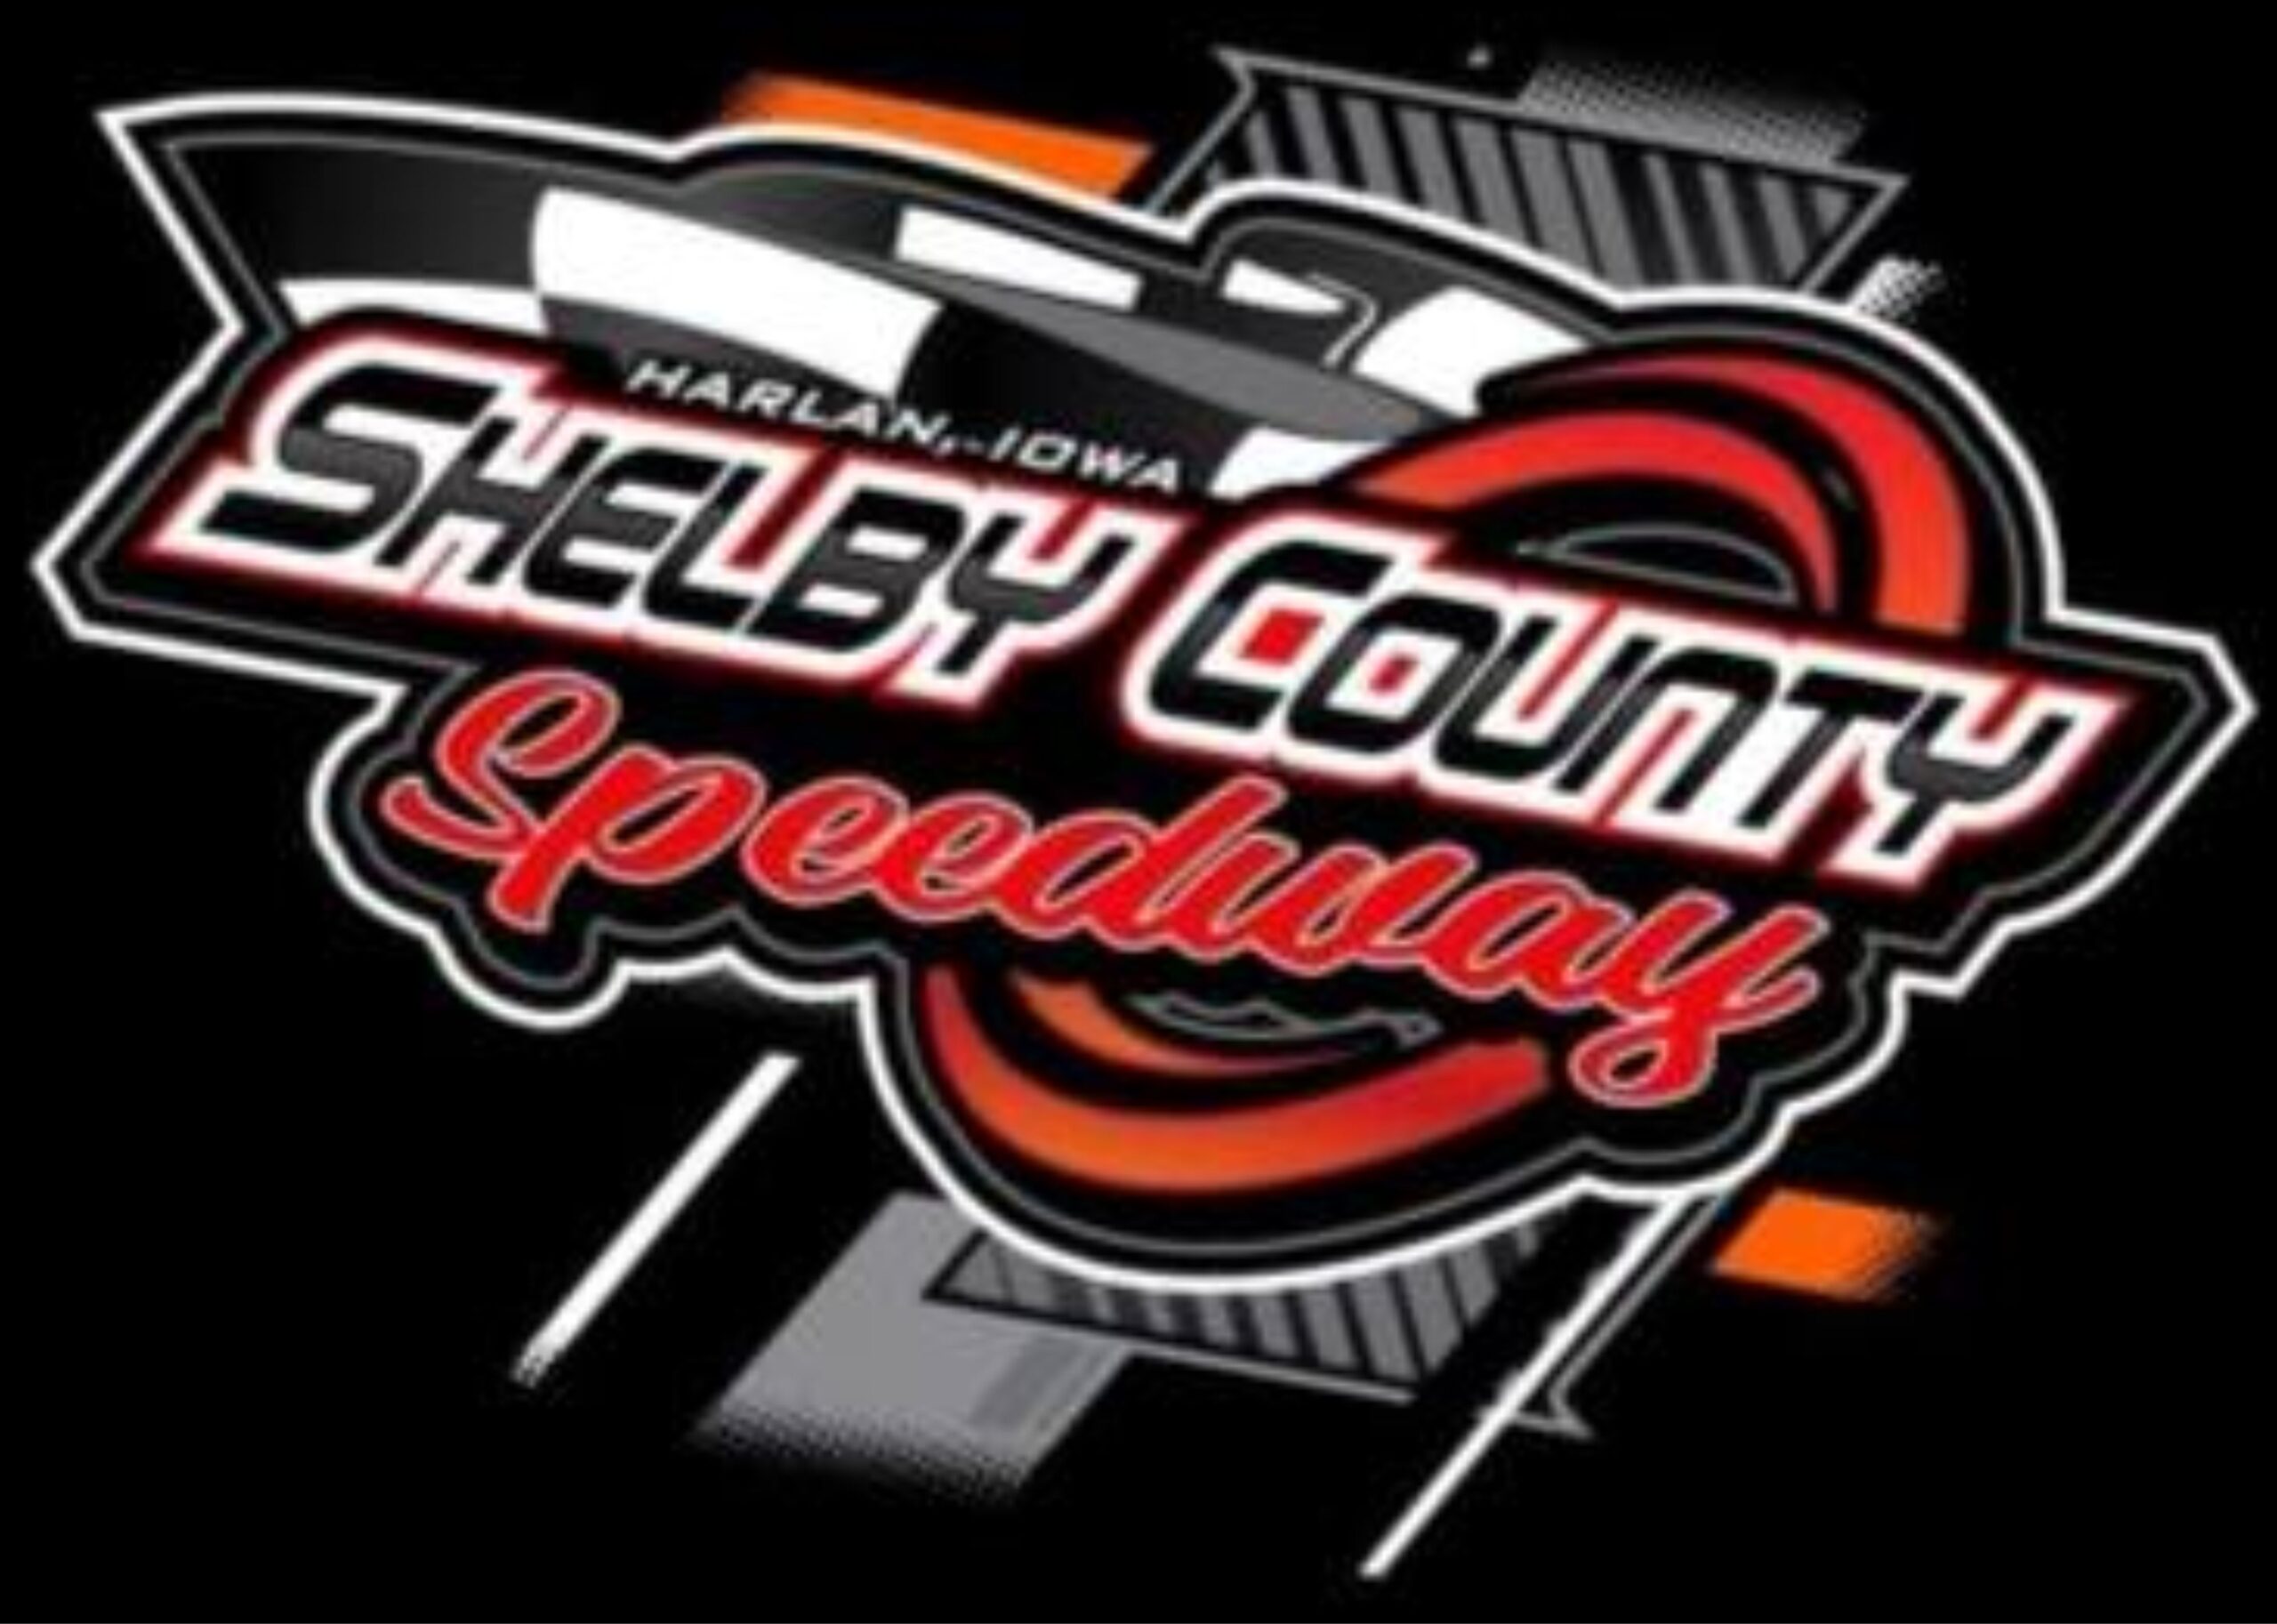 Shelby County Speedway - WEST/EAST Rallen Zeitner Memorial